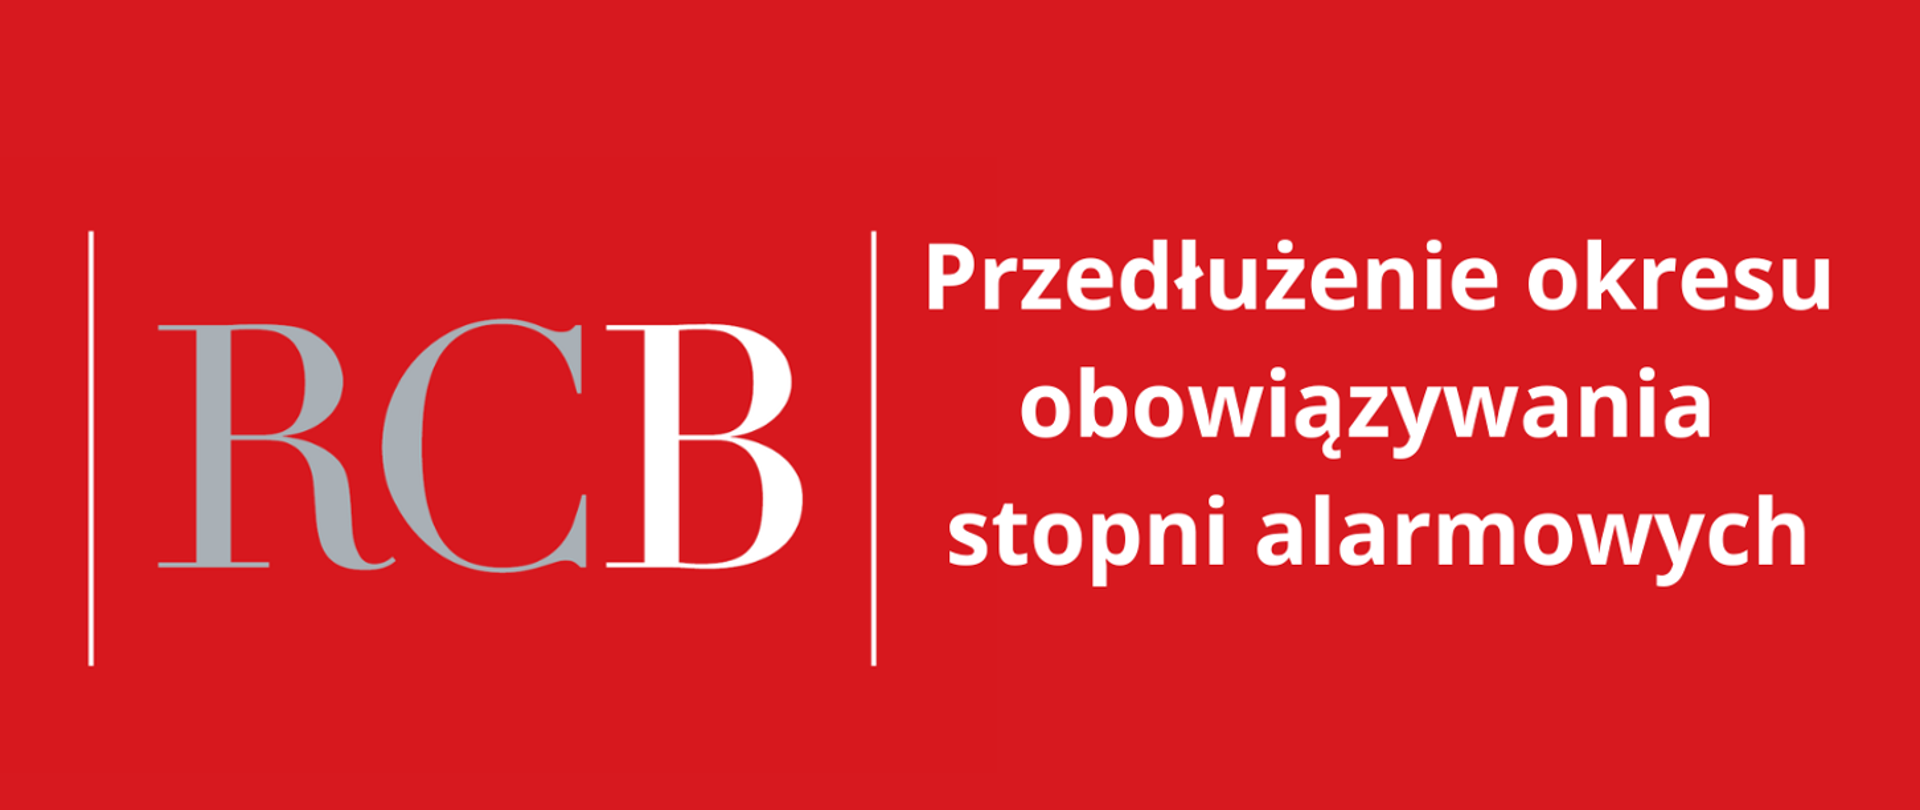 Alert o przedłużeniu okresu obowiązywania stopni alarmowych na czerwonym tle. Grafika dotyczy podpisania zarządzenia o przedłużeniu 2. stopnia BRAVO i 2. stopnia BRAVO-CRP na terenie całego kraju oraz 2. stopnia BRAVO wobec polskiej infrastruktury energetycznej, mieszczącej się poza granicami Rzeczypospolitej Polskiej.